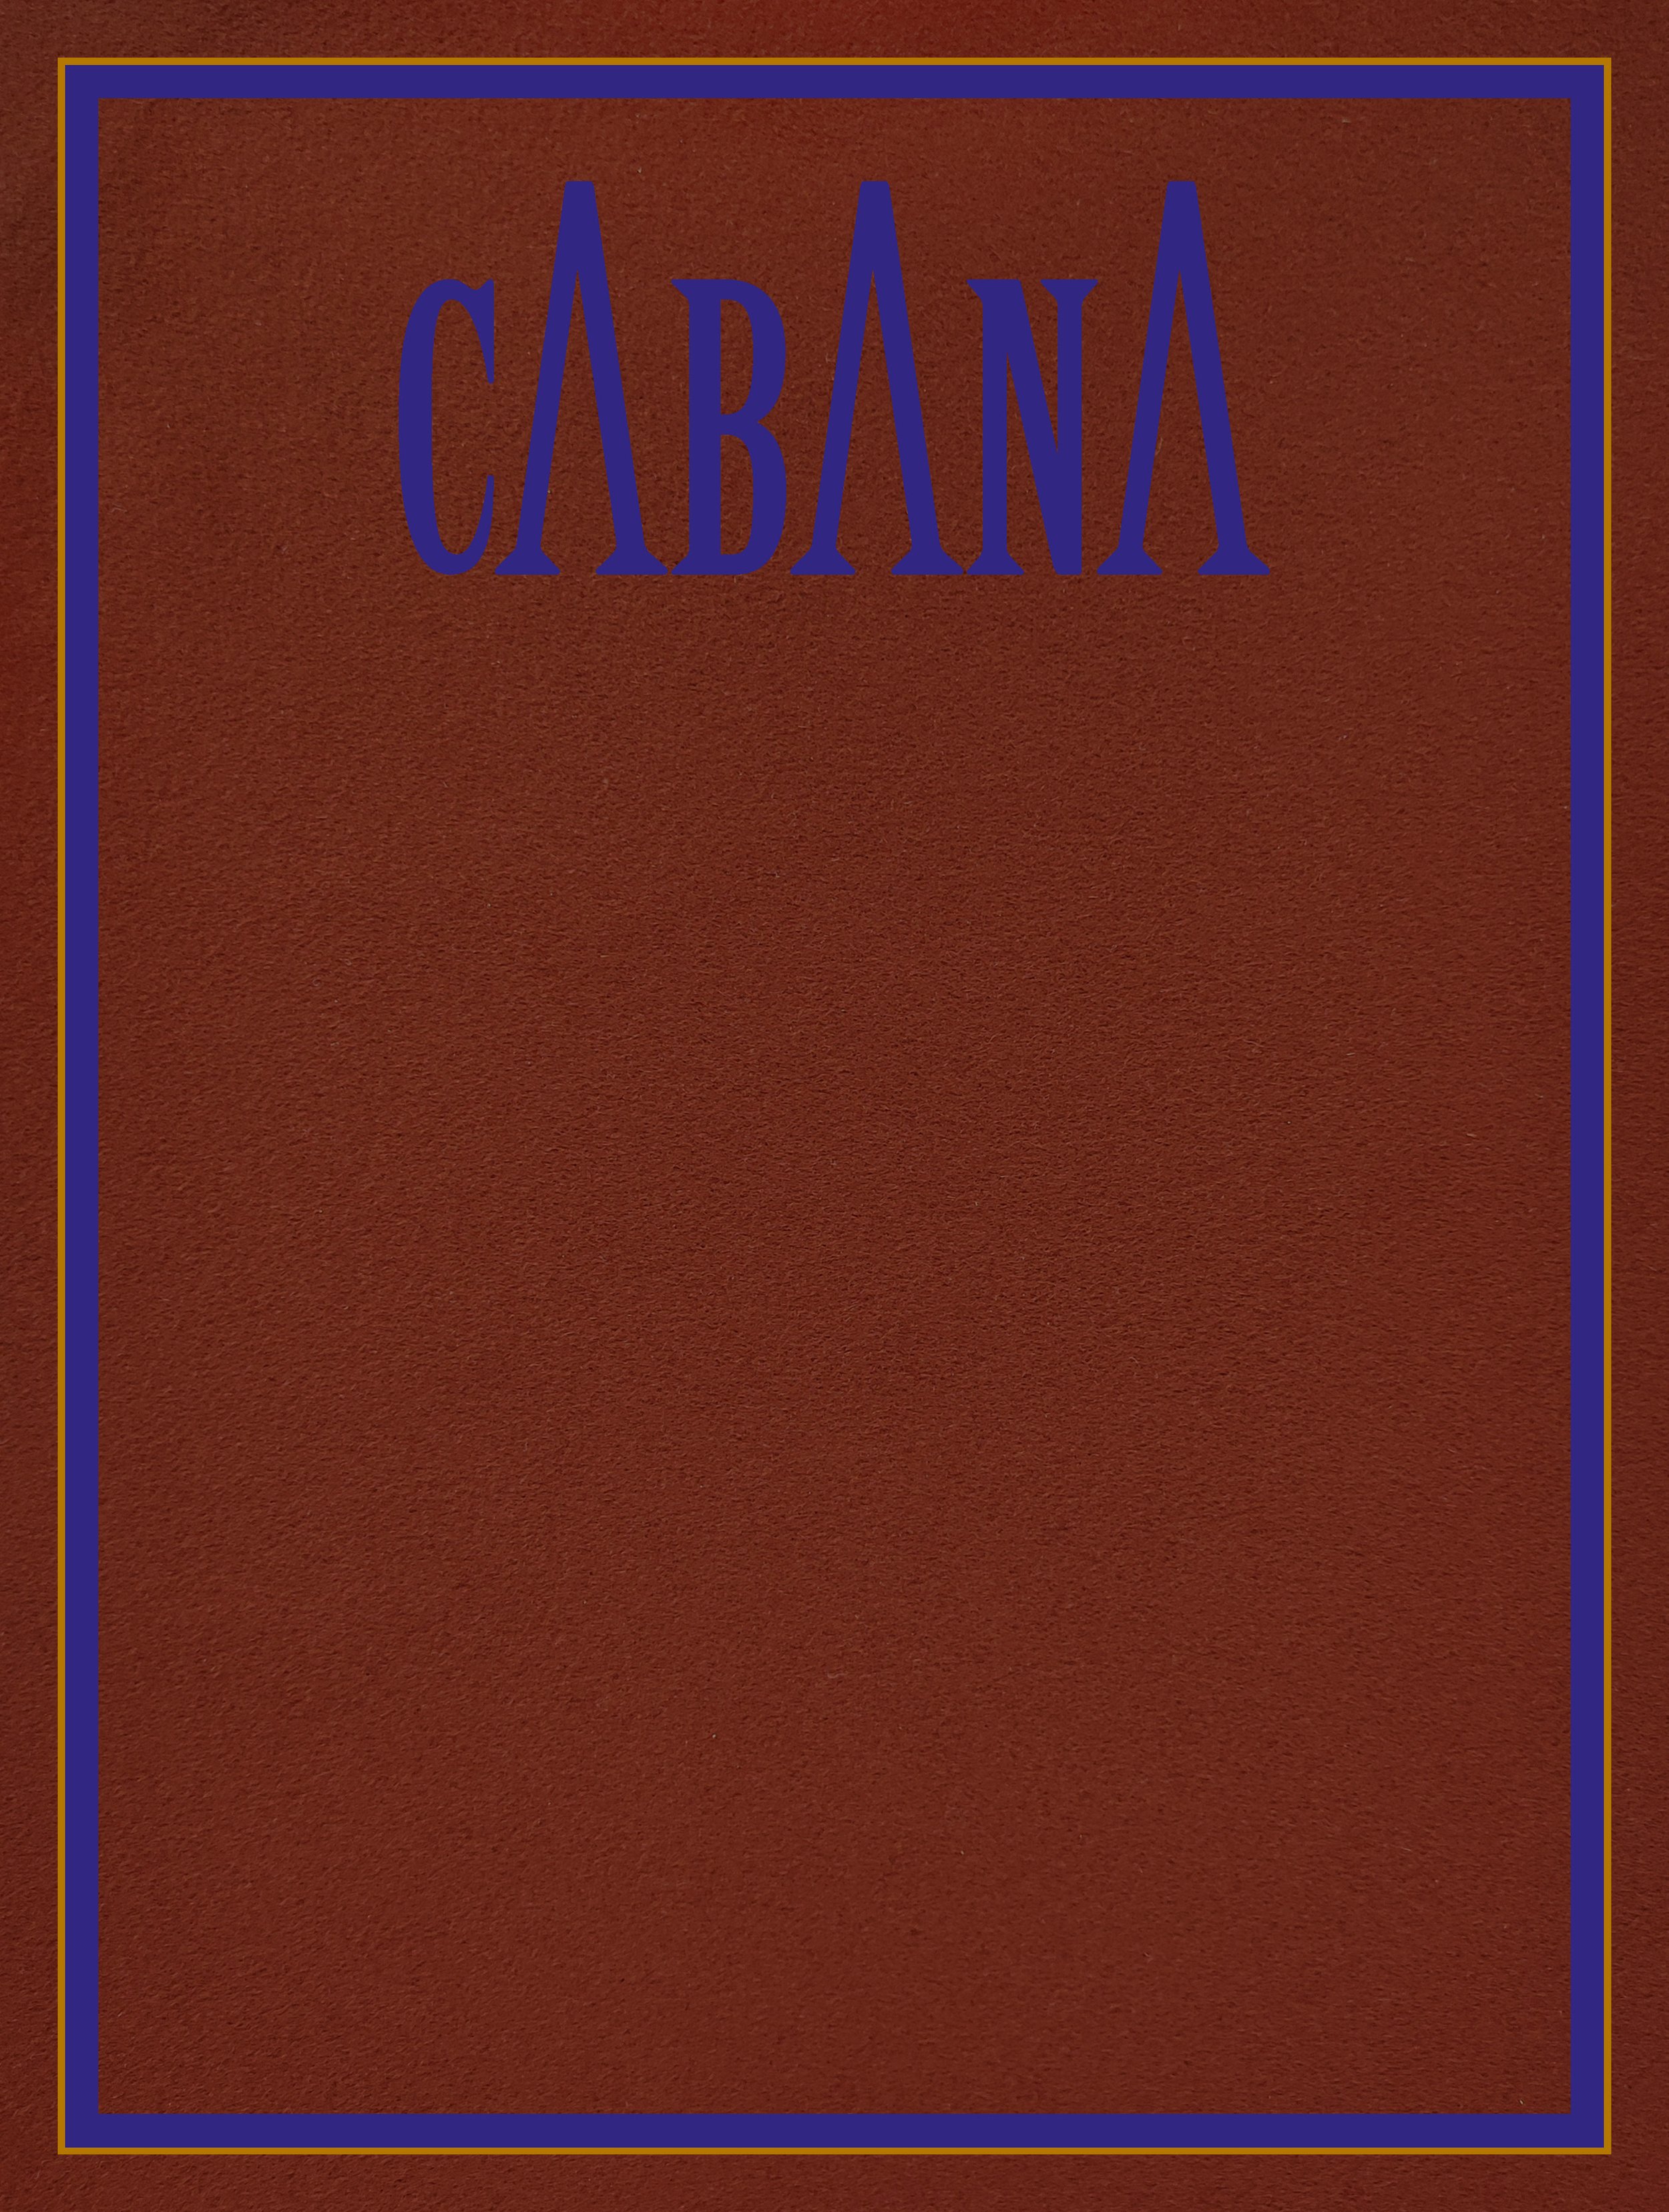 CABANA_COVER-montaggi.jpg